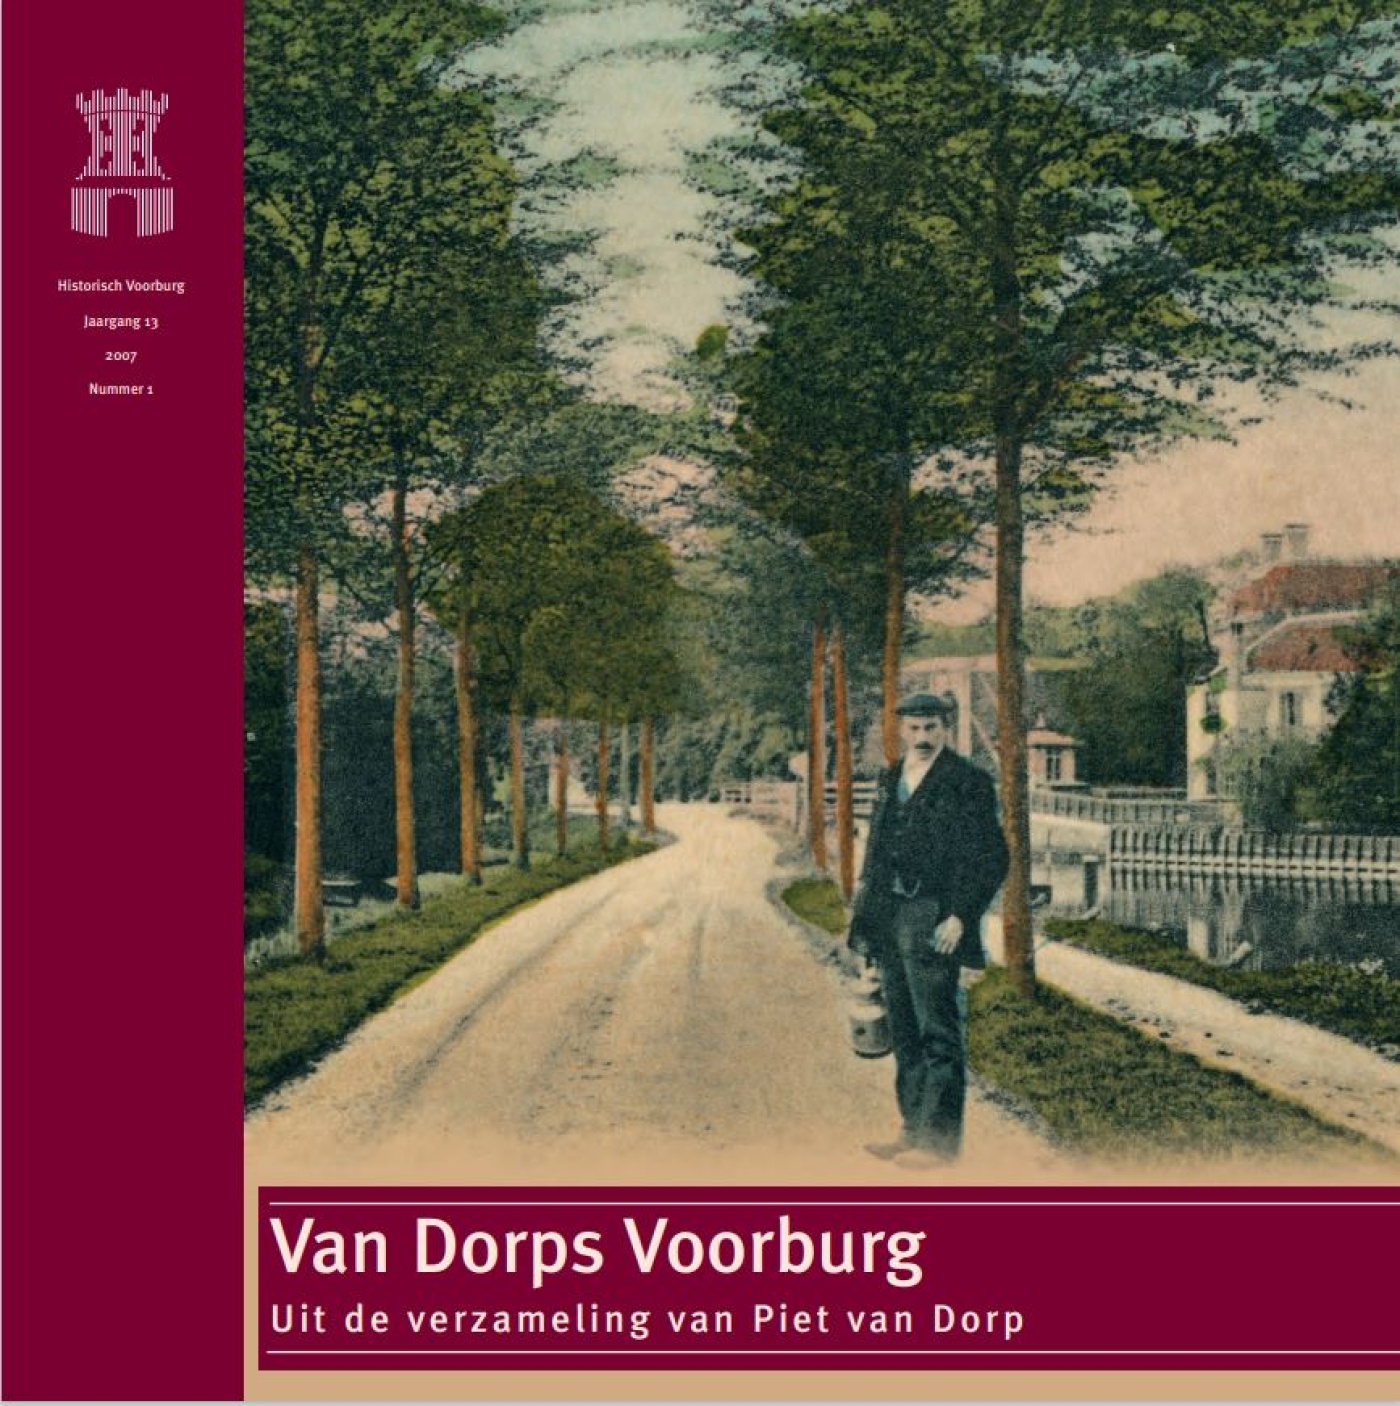 HV13-1 Van Dorps Voorburg.JPG